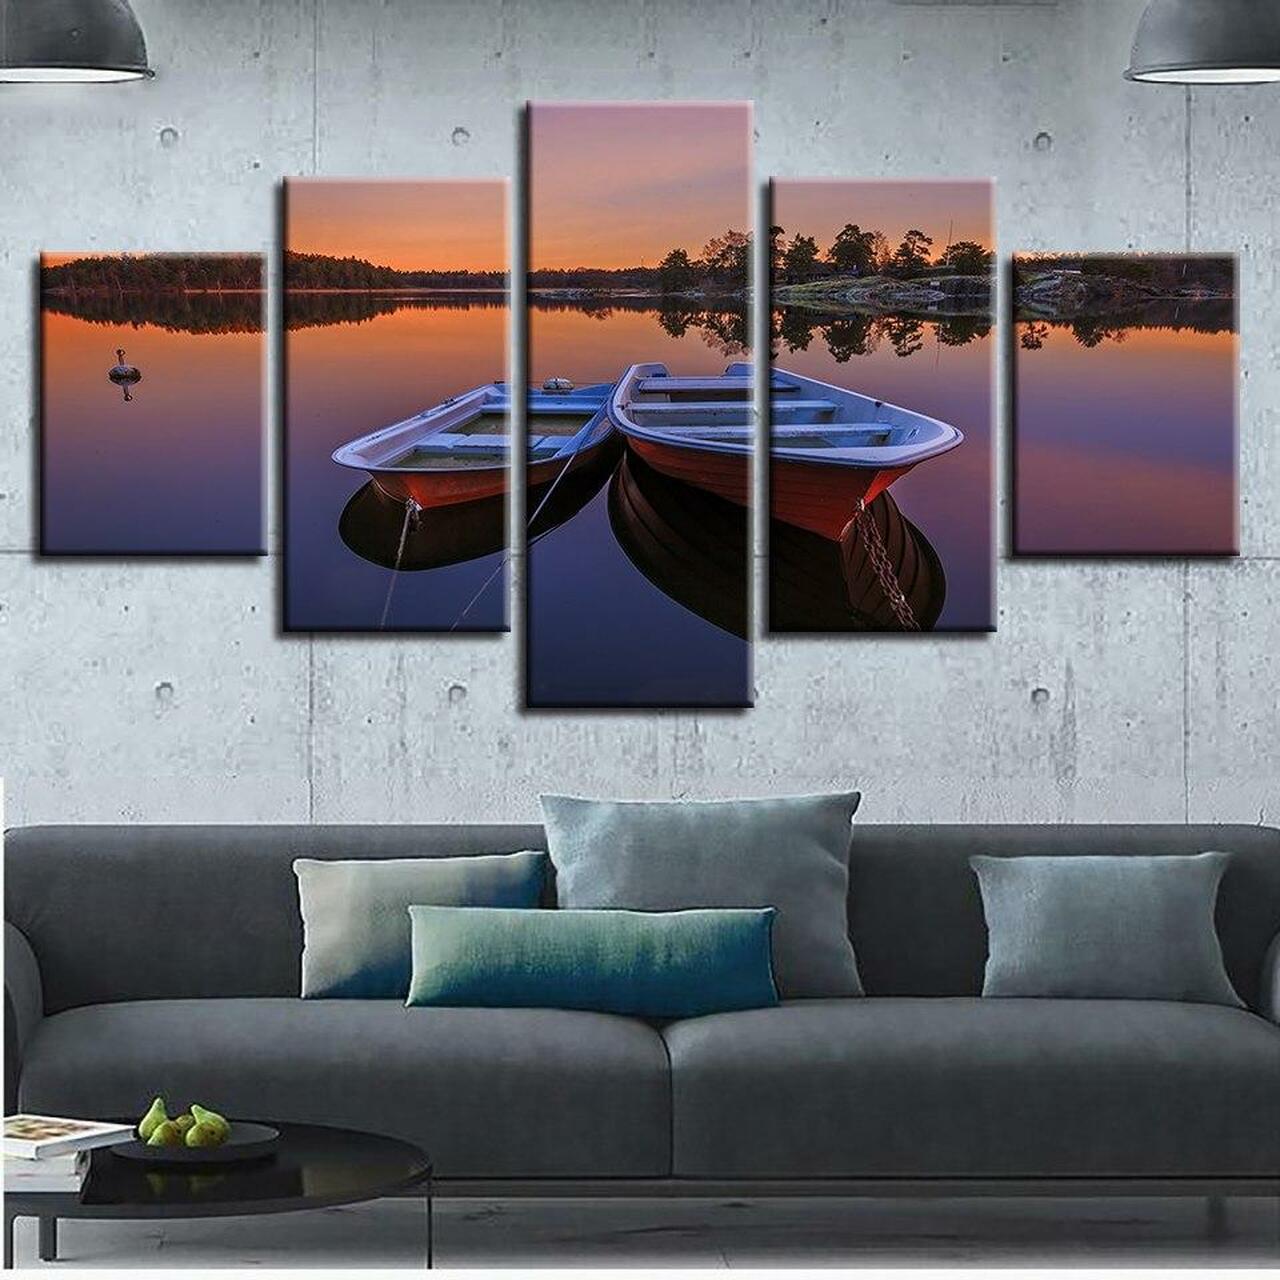 two canoes 5 pices peinture sur toile impression sur toile toile art pour la dcoration intrieuremu4pw